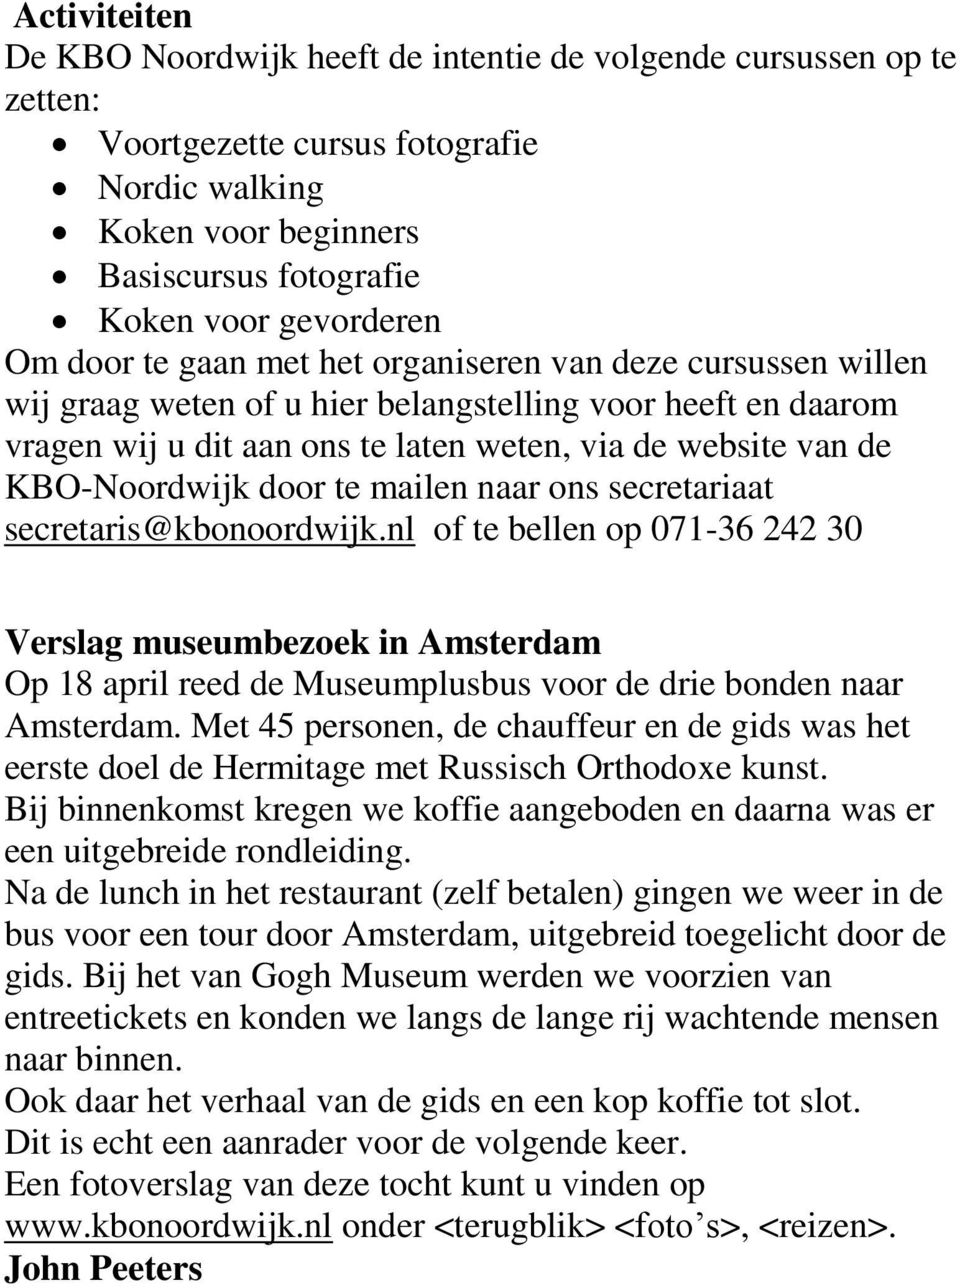 door te mailen naar ons secretariaat secretaris@kbonoordwijk.nl of te bellen op 071-36 242 30 Verslag museumbezoek in Amsterdam Op 18 april reed de Museumplusbus voor de drie bonden naar Amsterdam.